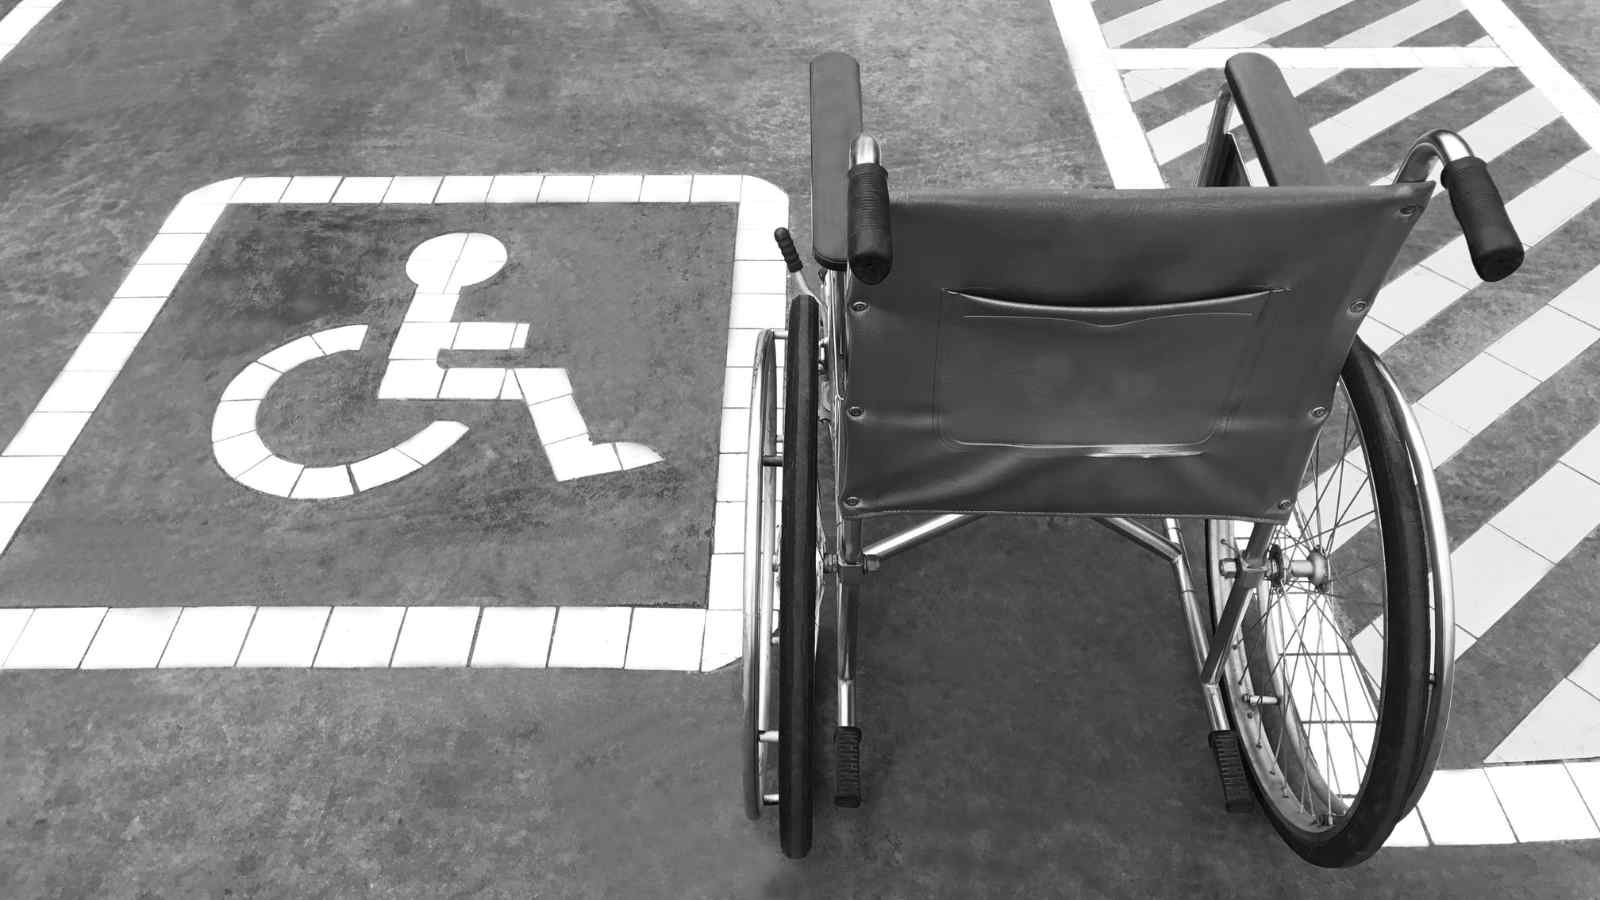 Una nuova speranza per le persone con disabilità motorie viene data da Nolan Arbaugh e il suo chip Neuralink